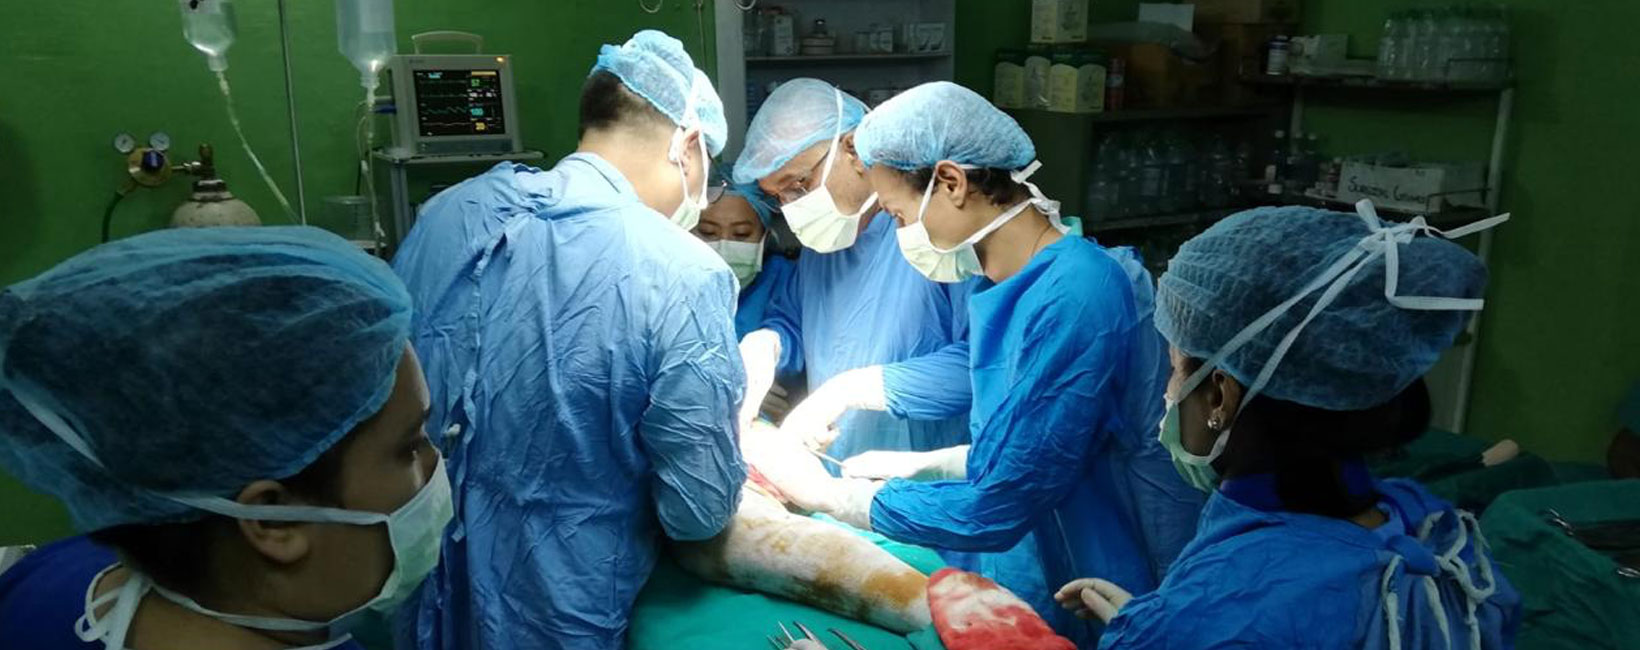 नेपालमा चिकित्सक र अस्पतालले लापरबाही गरेको भन्दै उजुरी थपिने क्रम बढ्यो